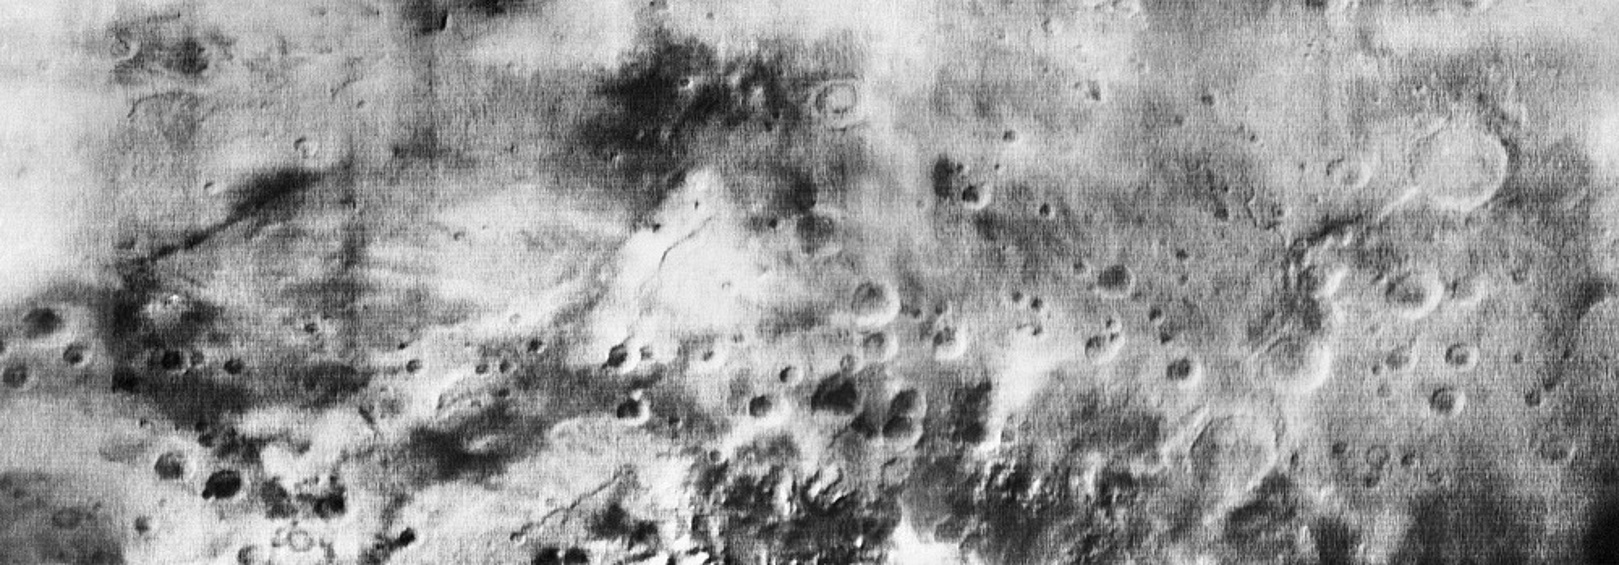 Фотография поверхности Марса, полученная с автоматической межпланетной станции "Марс-5", 24 сентября 1974 года